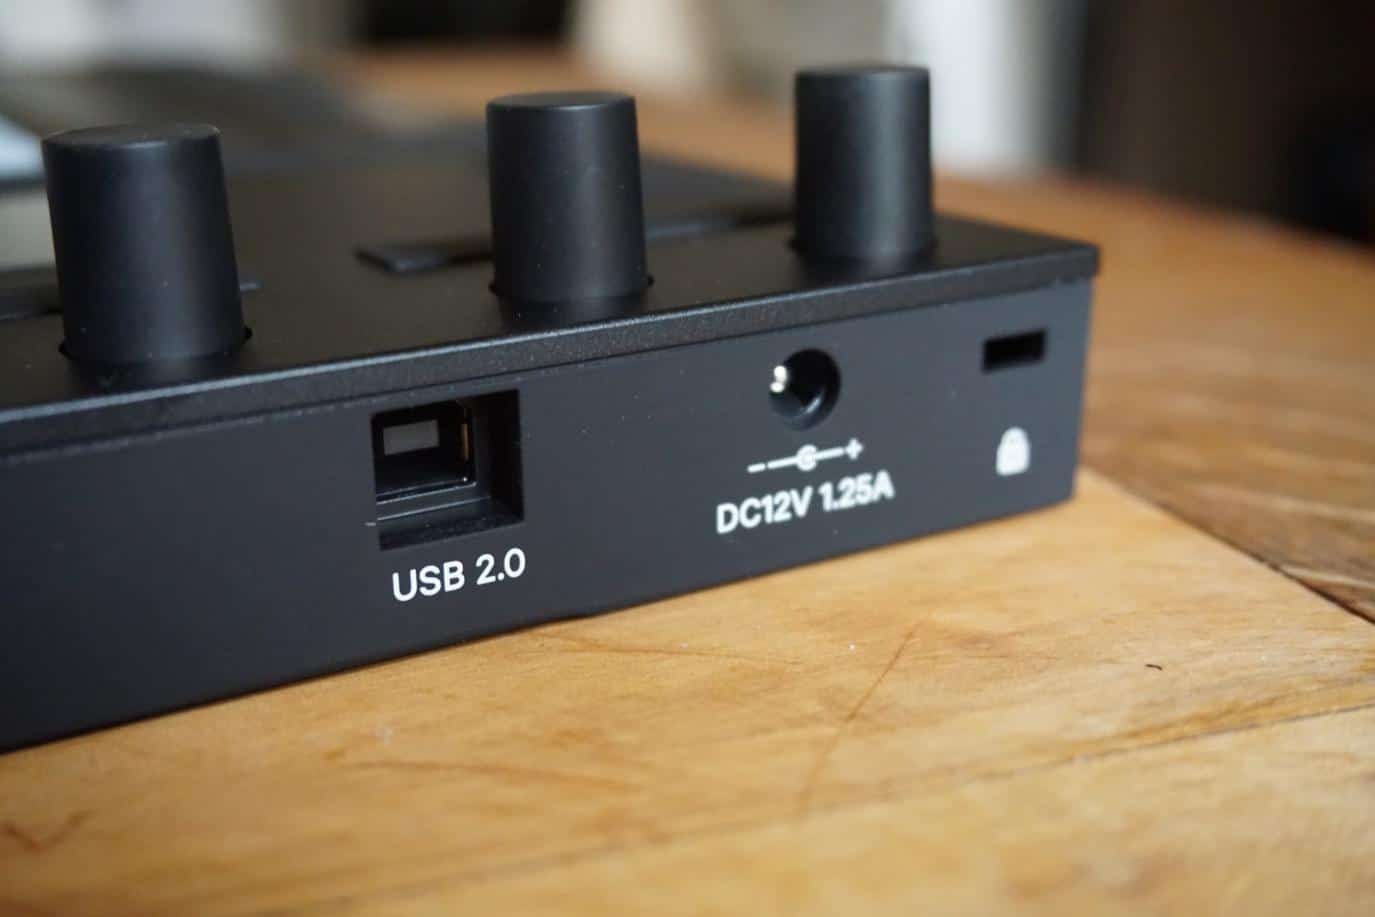 USB 2.0 port ableton push